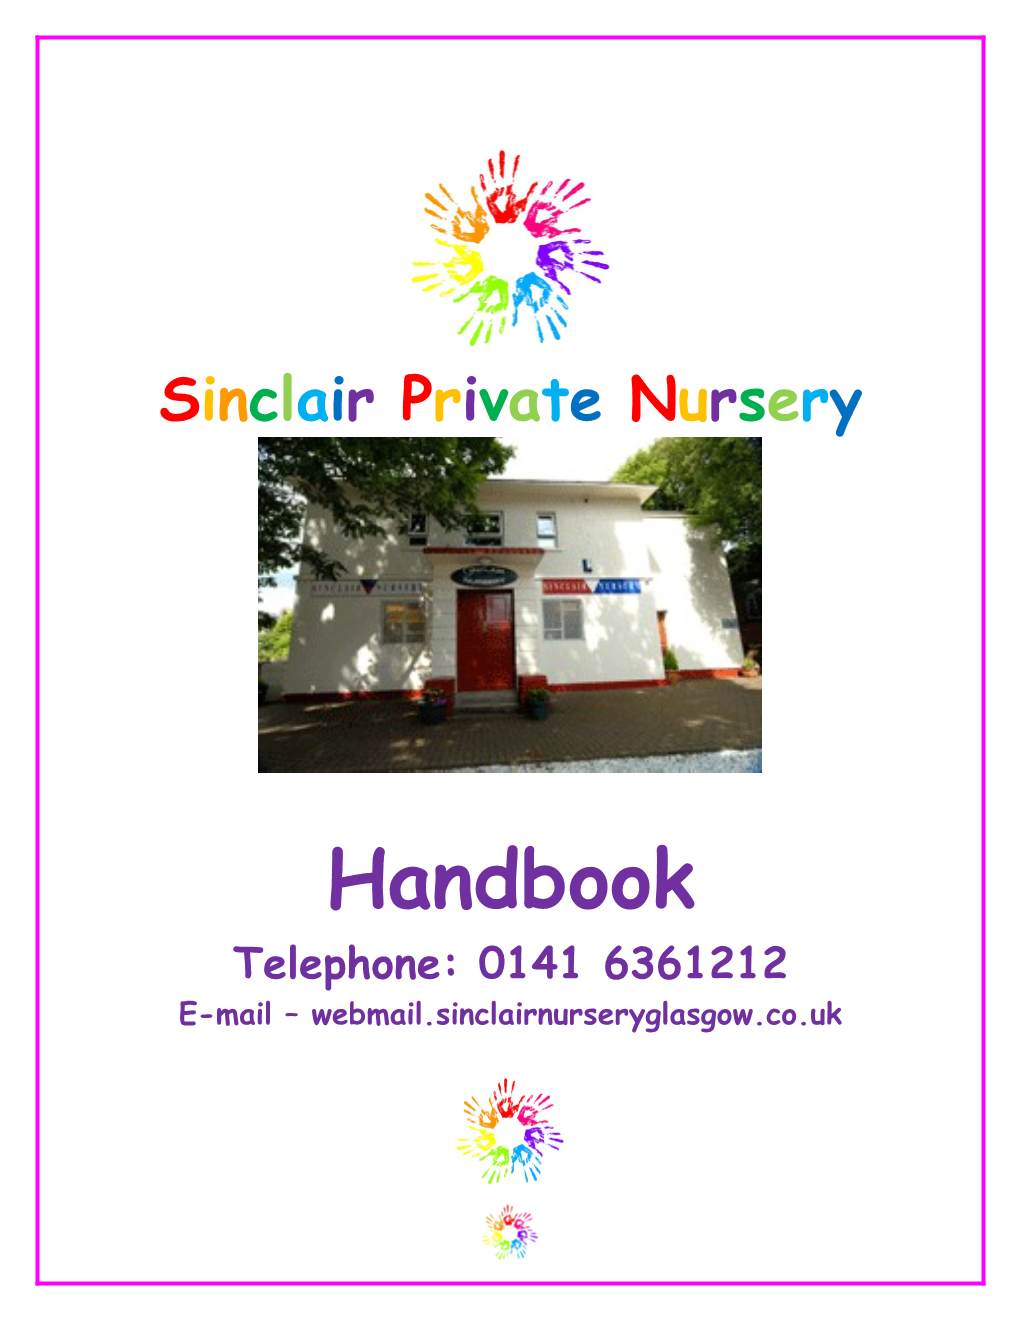 Sinclair Private Day Nursery